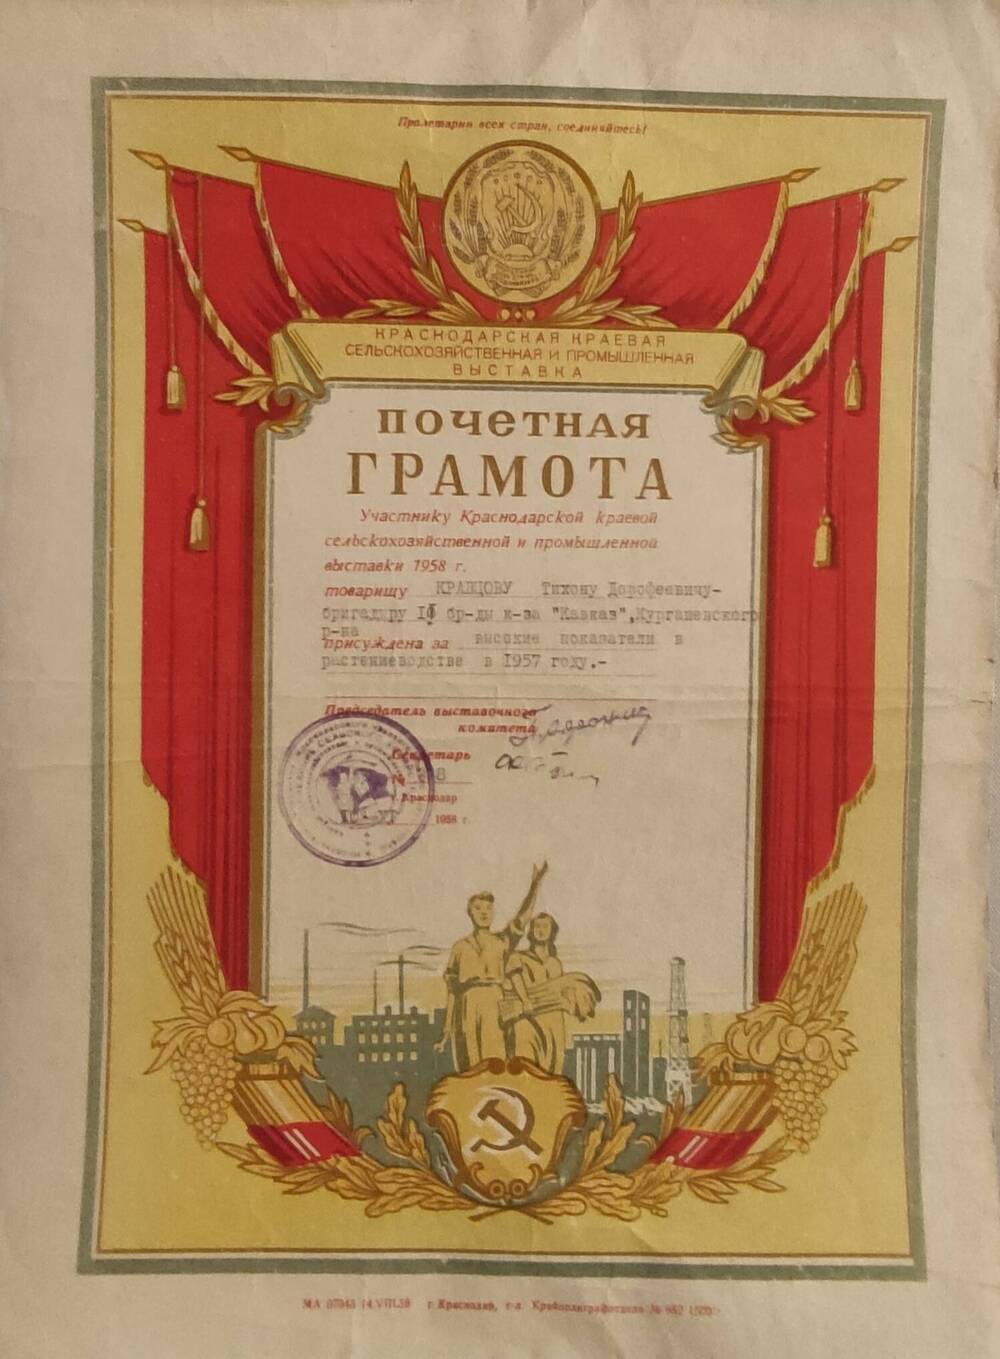 Почетная грамота Кравцову Тихону Дорофеевичу за высокие показатели в растениеводстве в 1957